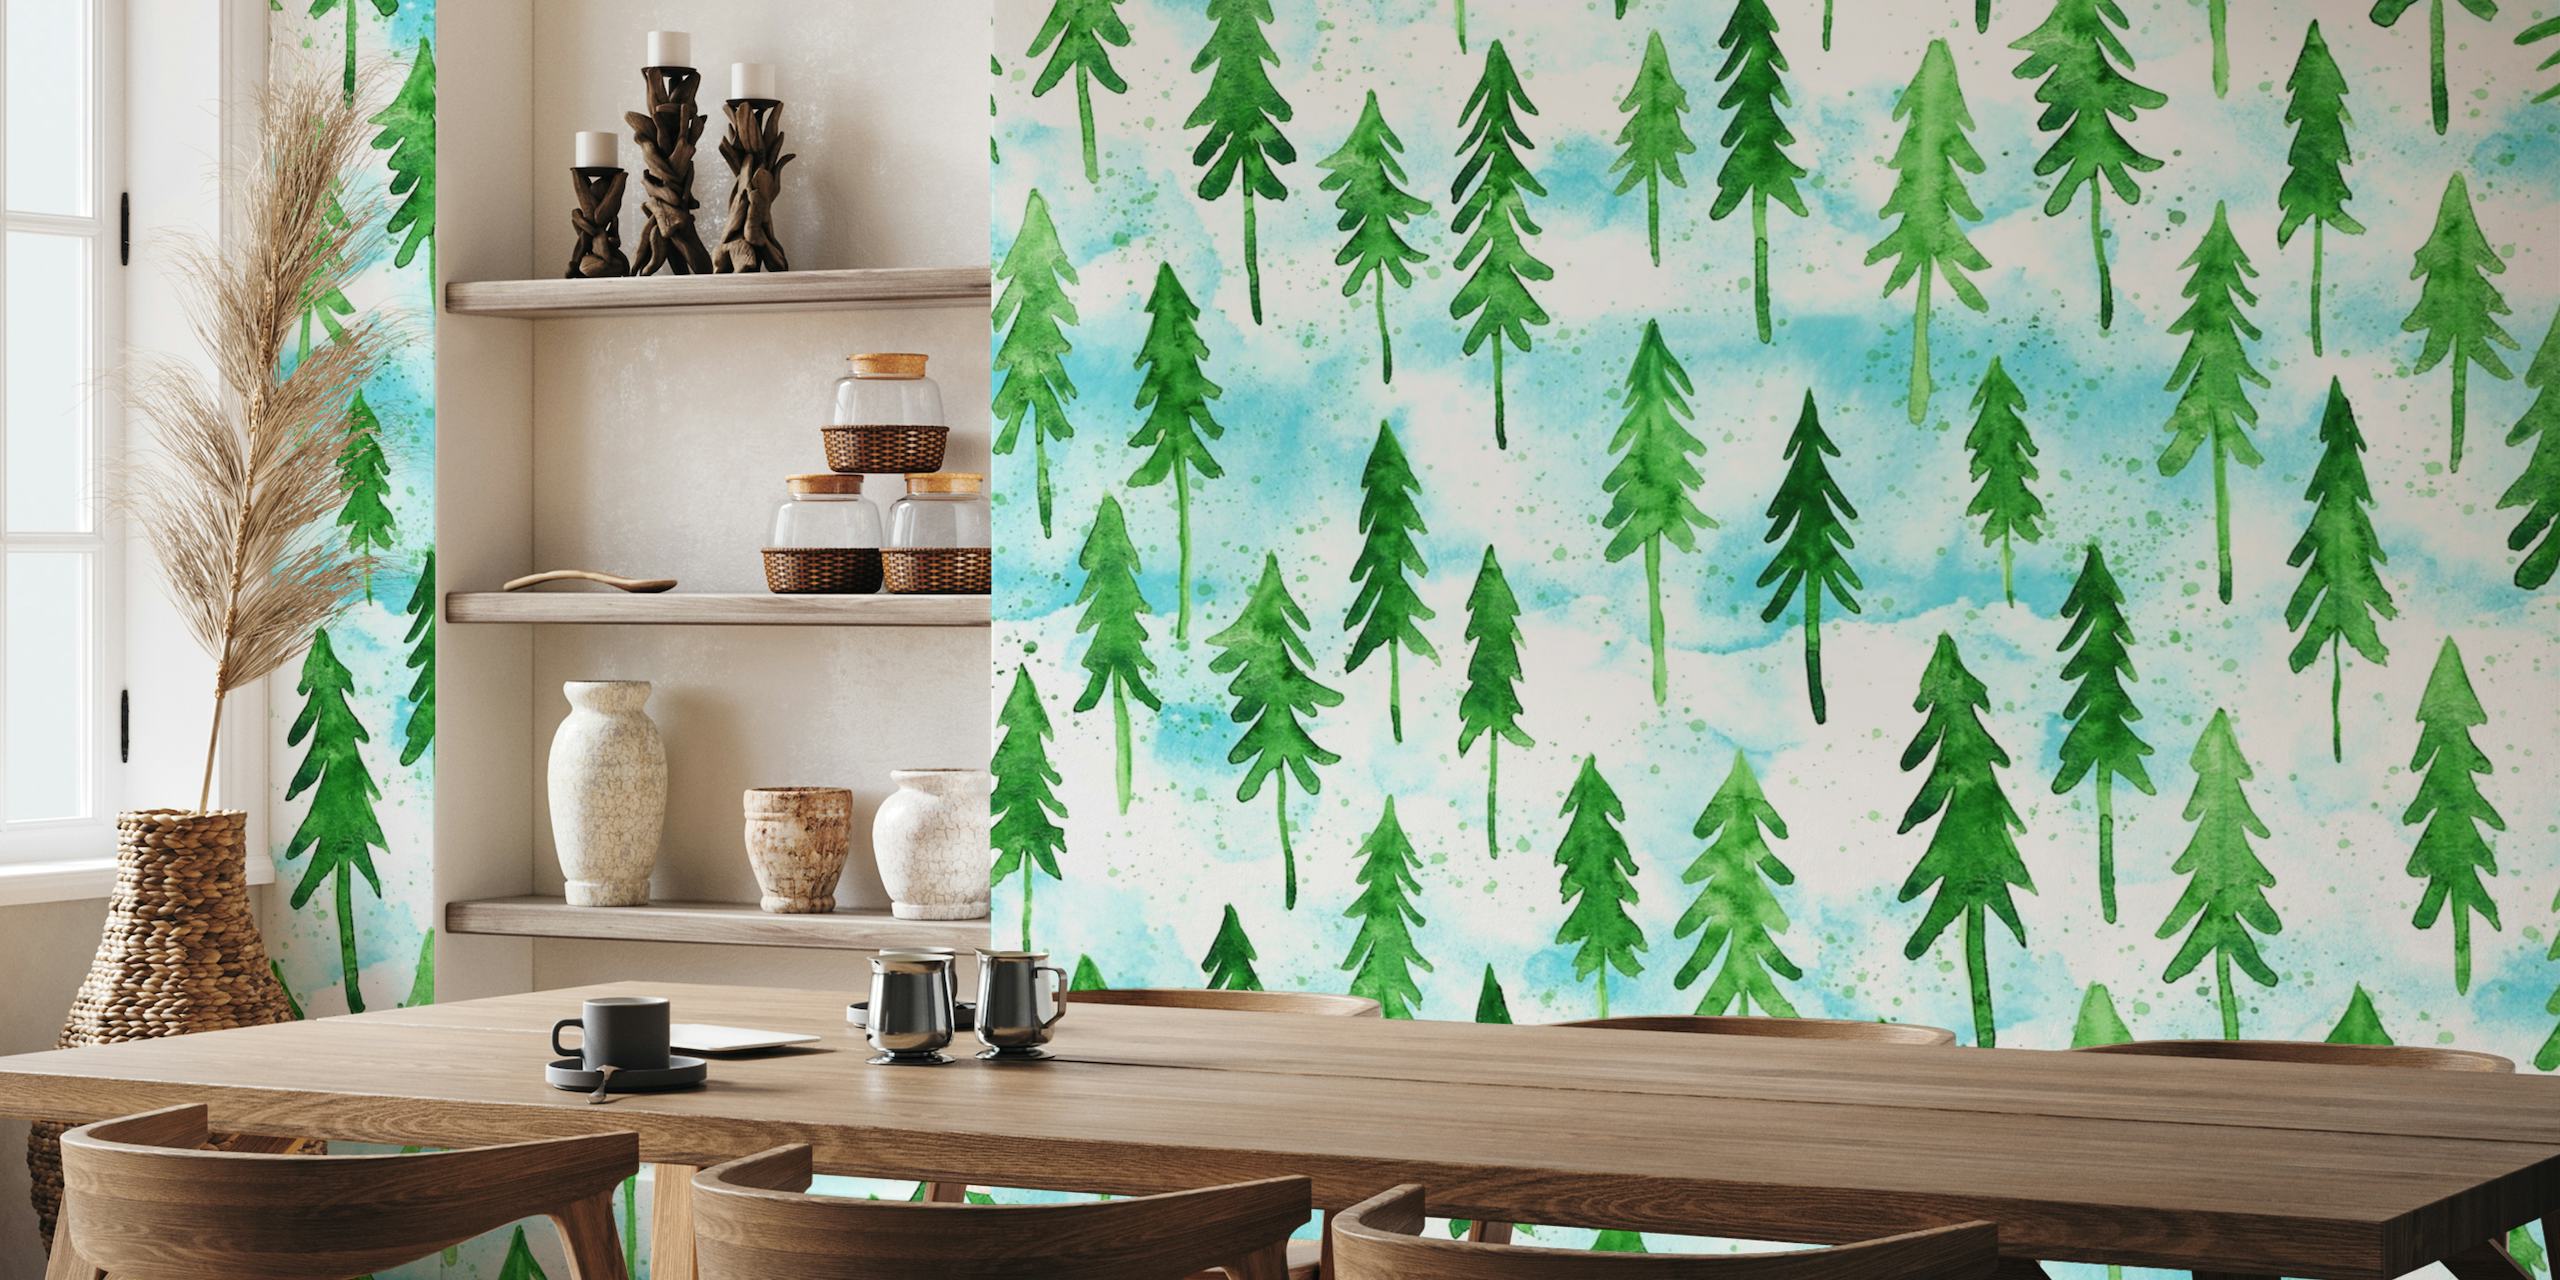 Fotomural con estampado de pino en acuarela de Happywall en tonos verdes y azules.